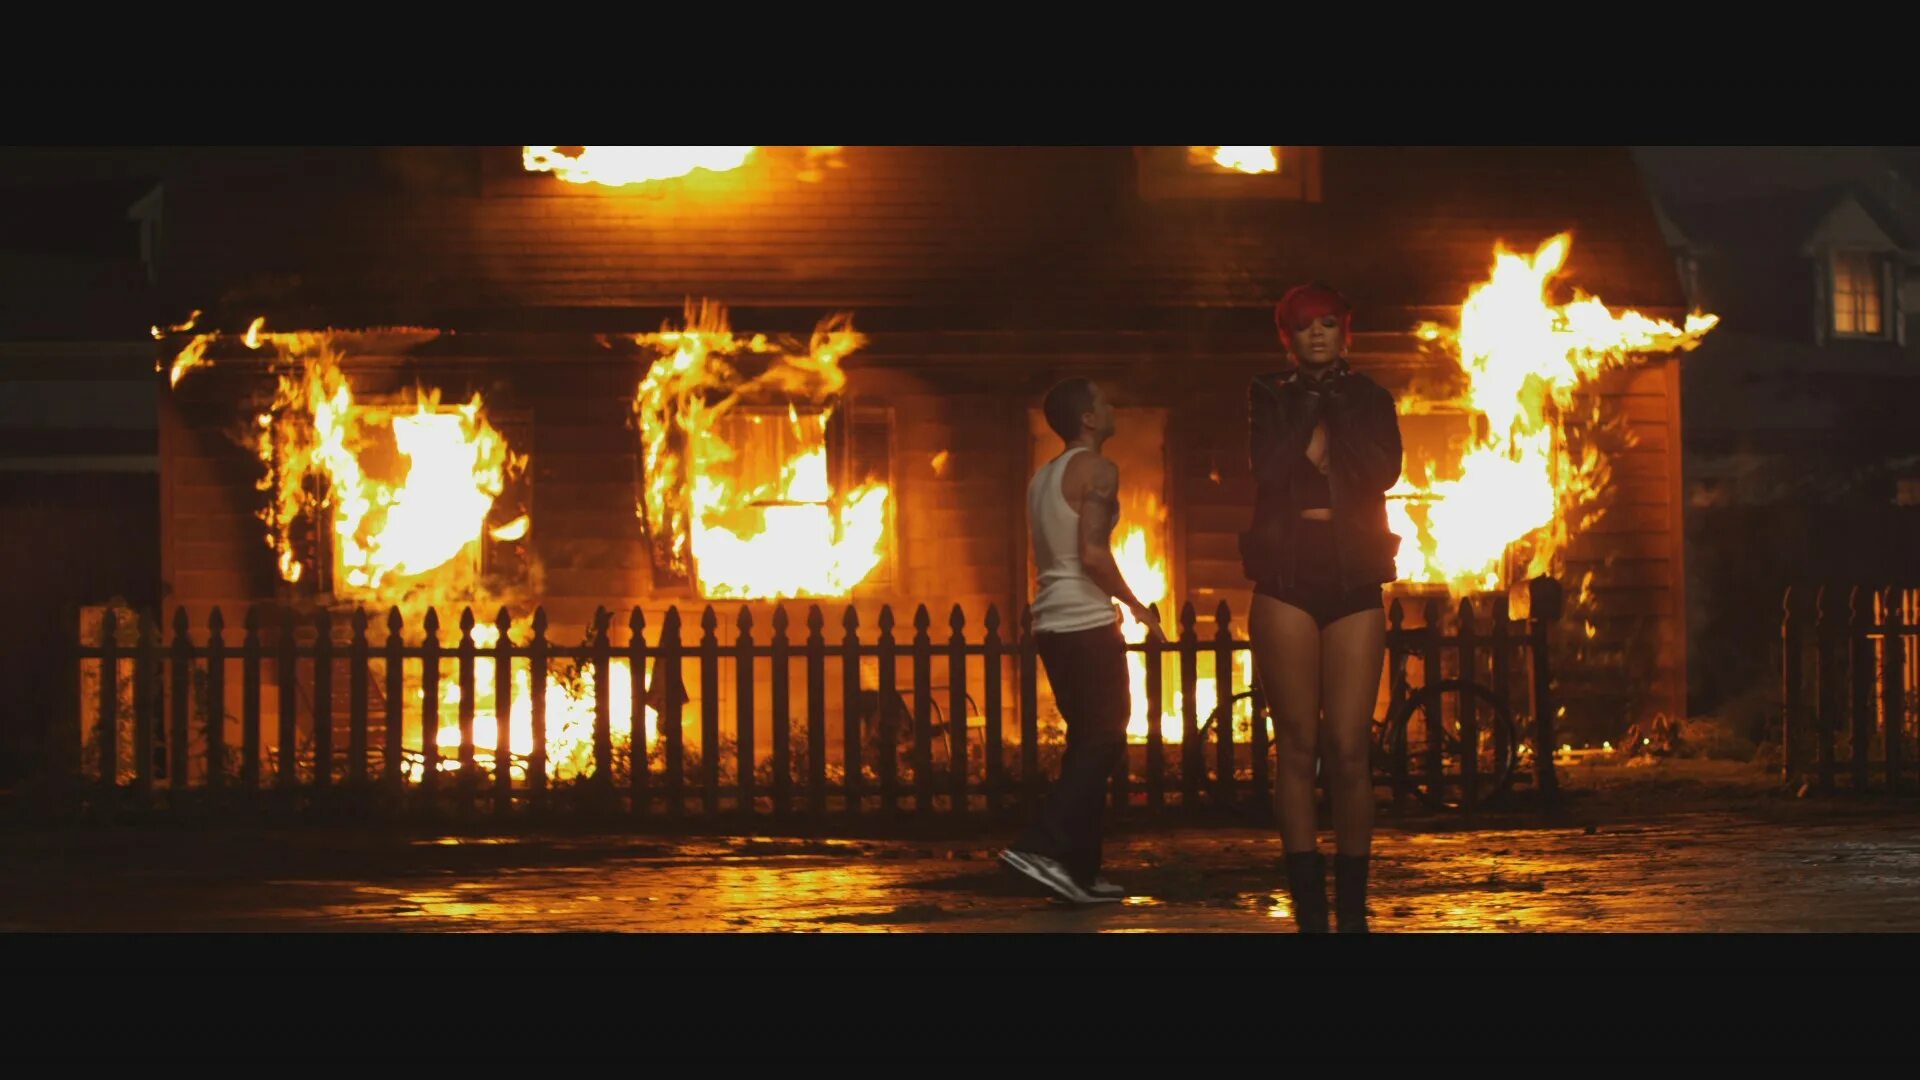 Сгораю до тла песня. Rihanna Eminem Love the way you Lie клип. Клип с горящим домом. Клип песни горит дом. Эминем в горящем доме.